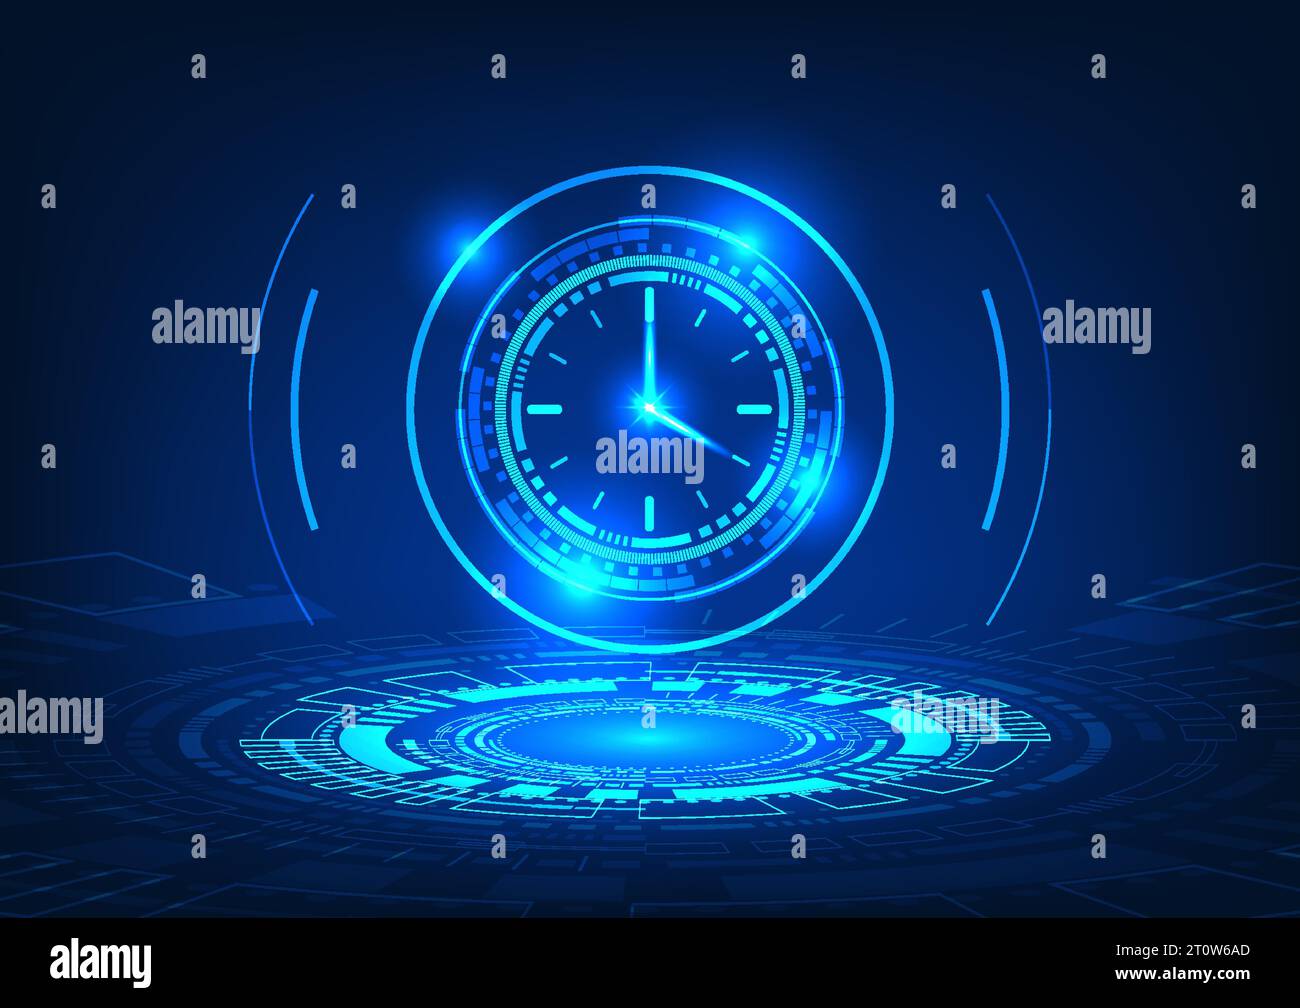 Tecnologia del tempo Un cerchio tecnologico che proietta l'orologio sotto  forma di immagine olografica. Si riferisce alla tecnologia sviluppata in  tempi rapidi Immagine e Vettoriale - Alamy